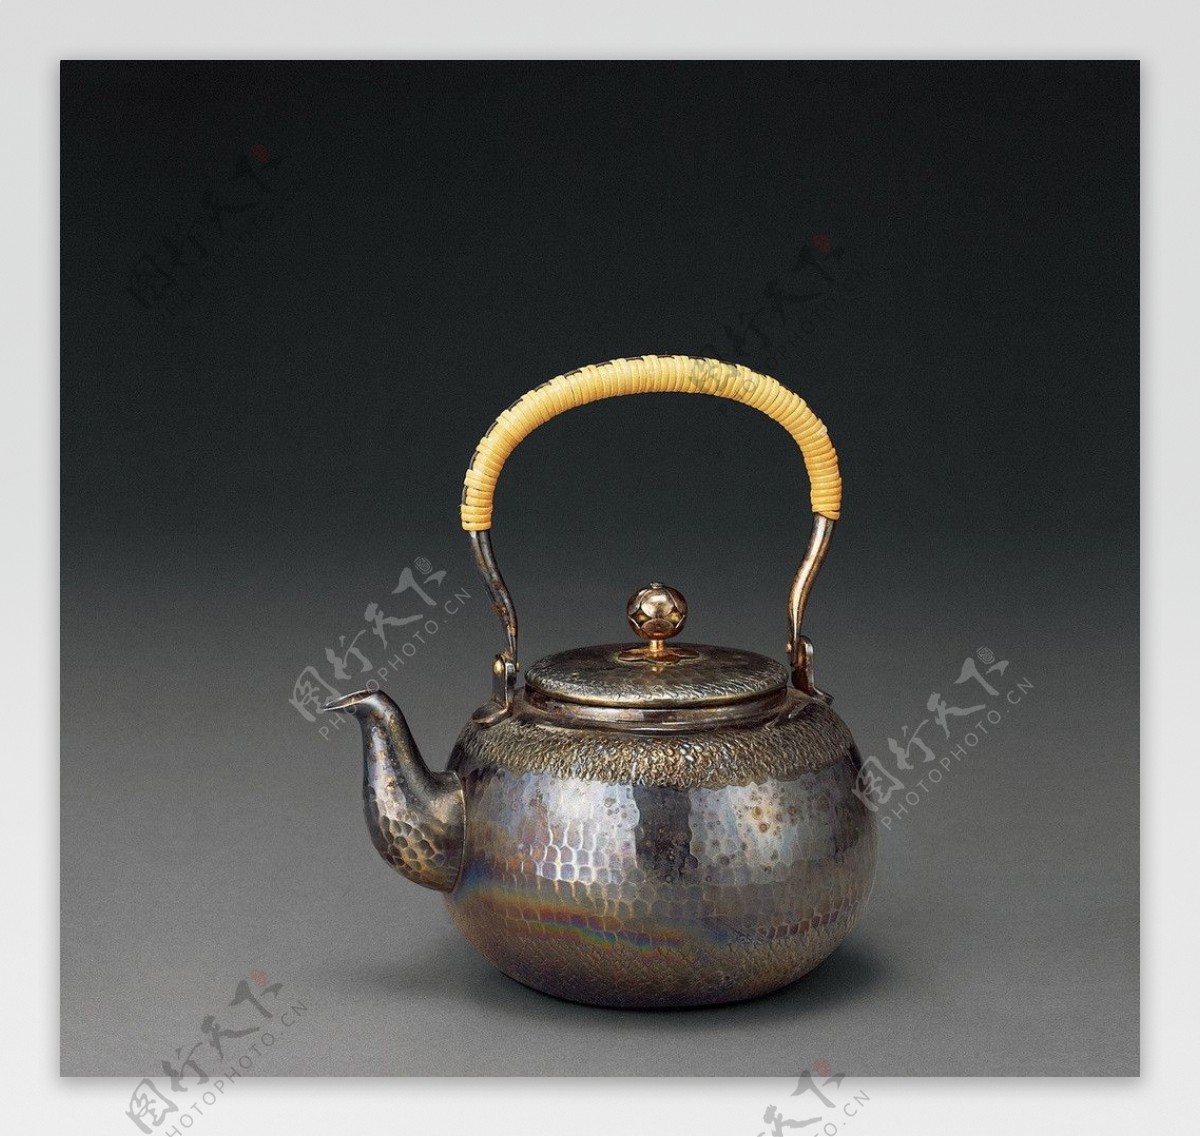 纯银茶壶手拎襻图片